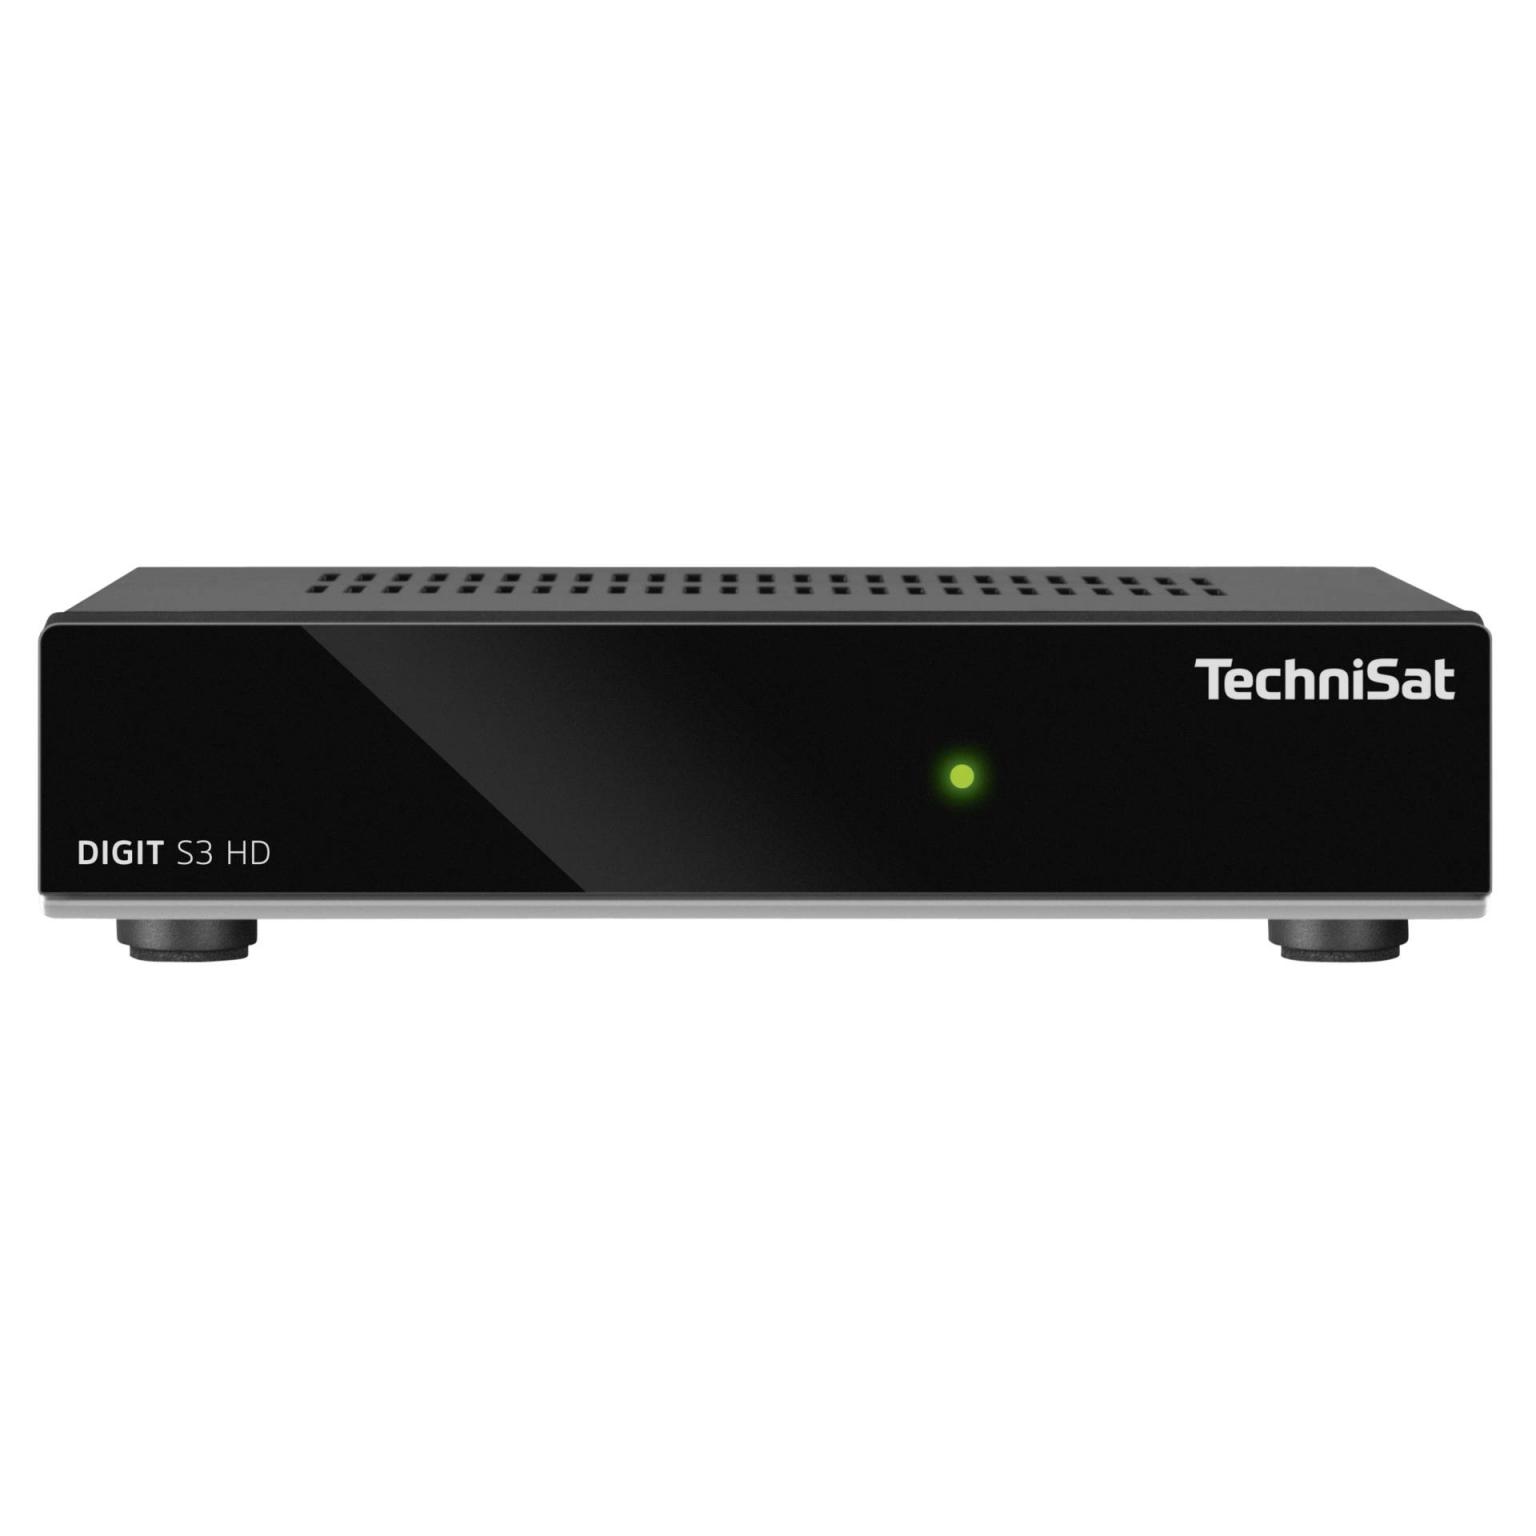 TechniSat DIGIT S3 HD - TechniSat